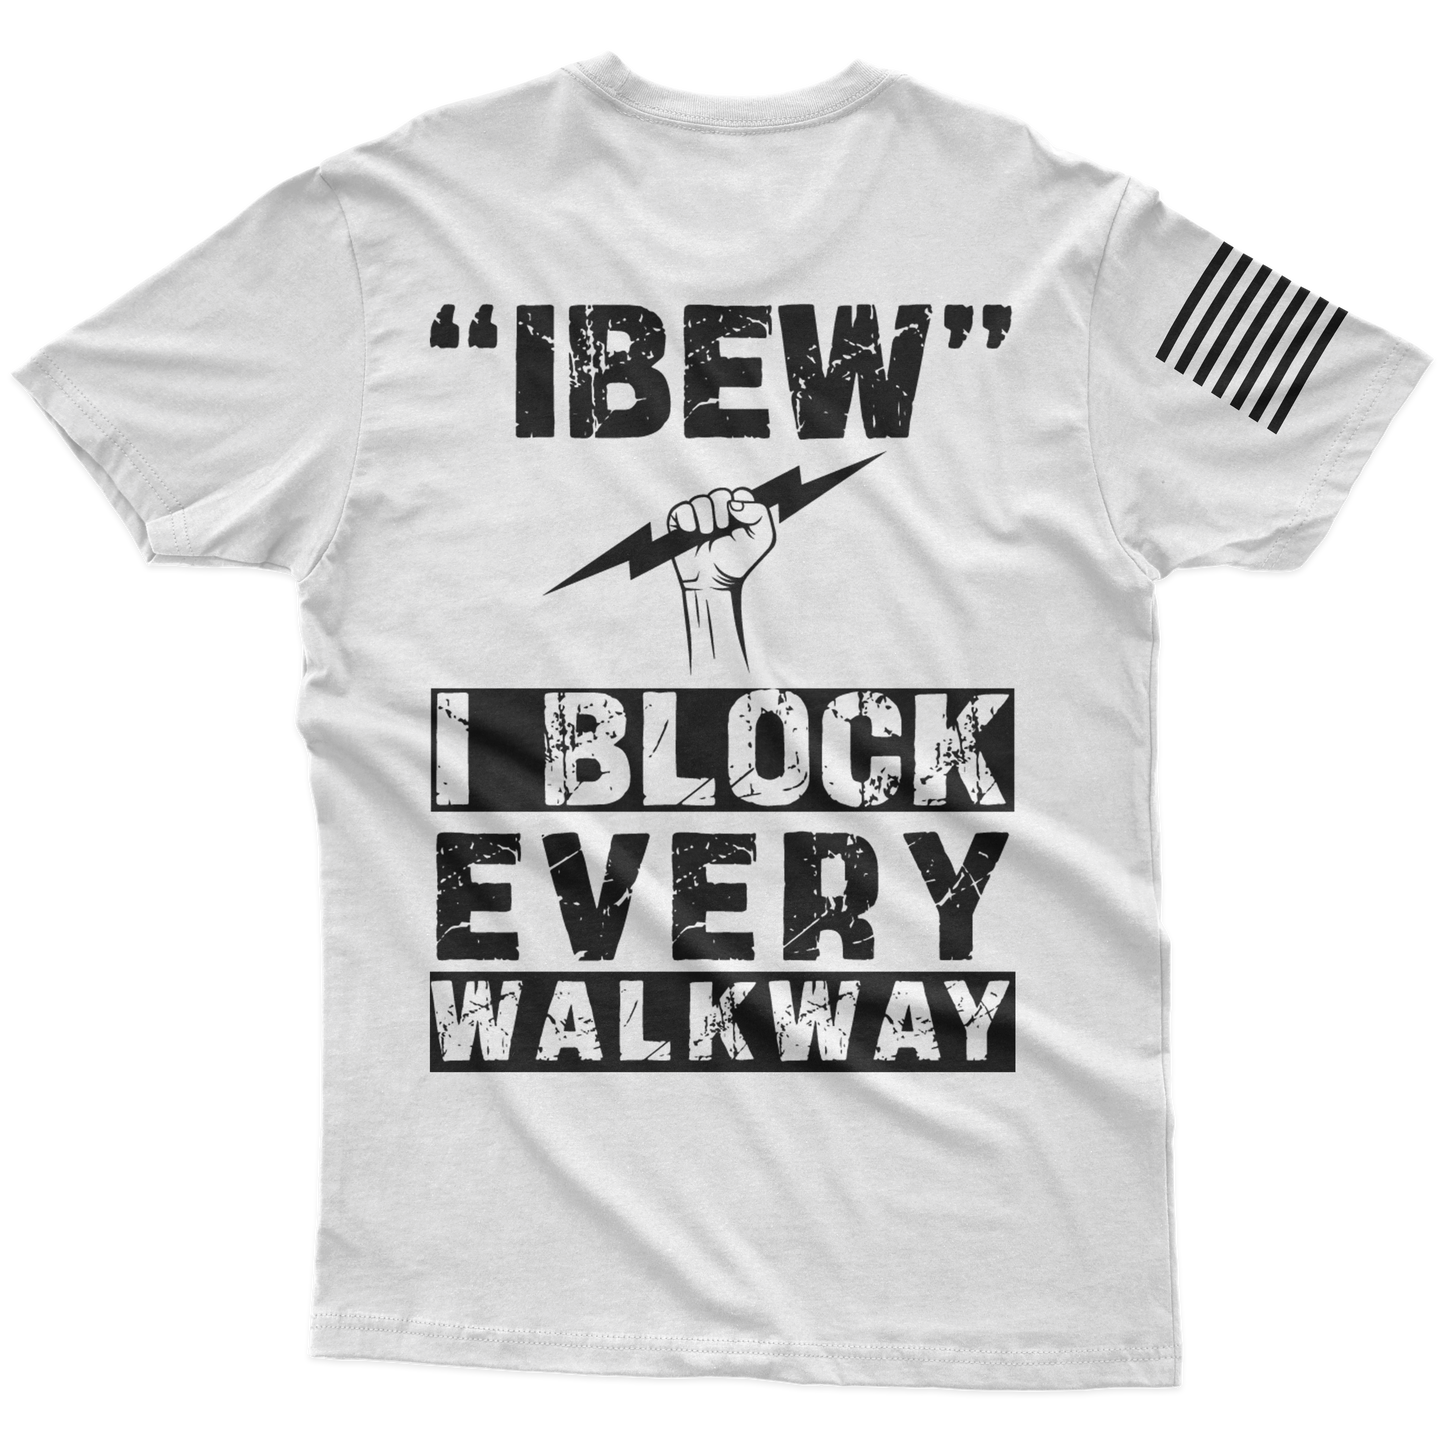 IBEW T-Shirt